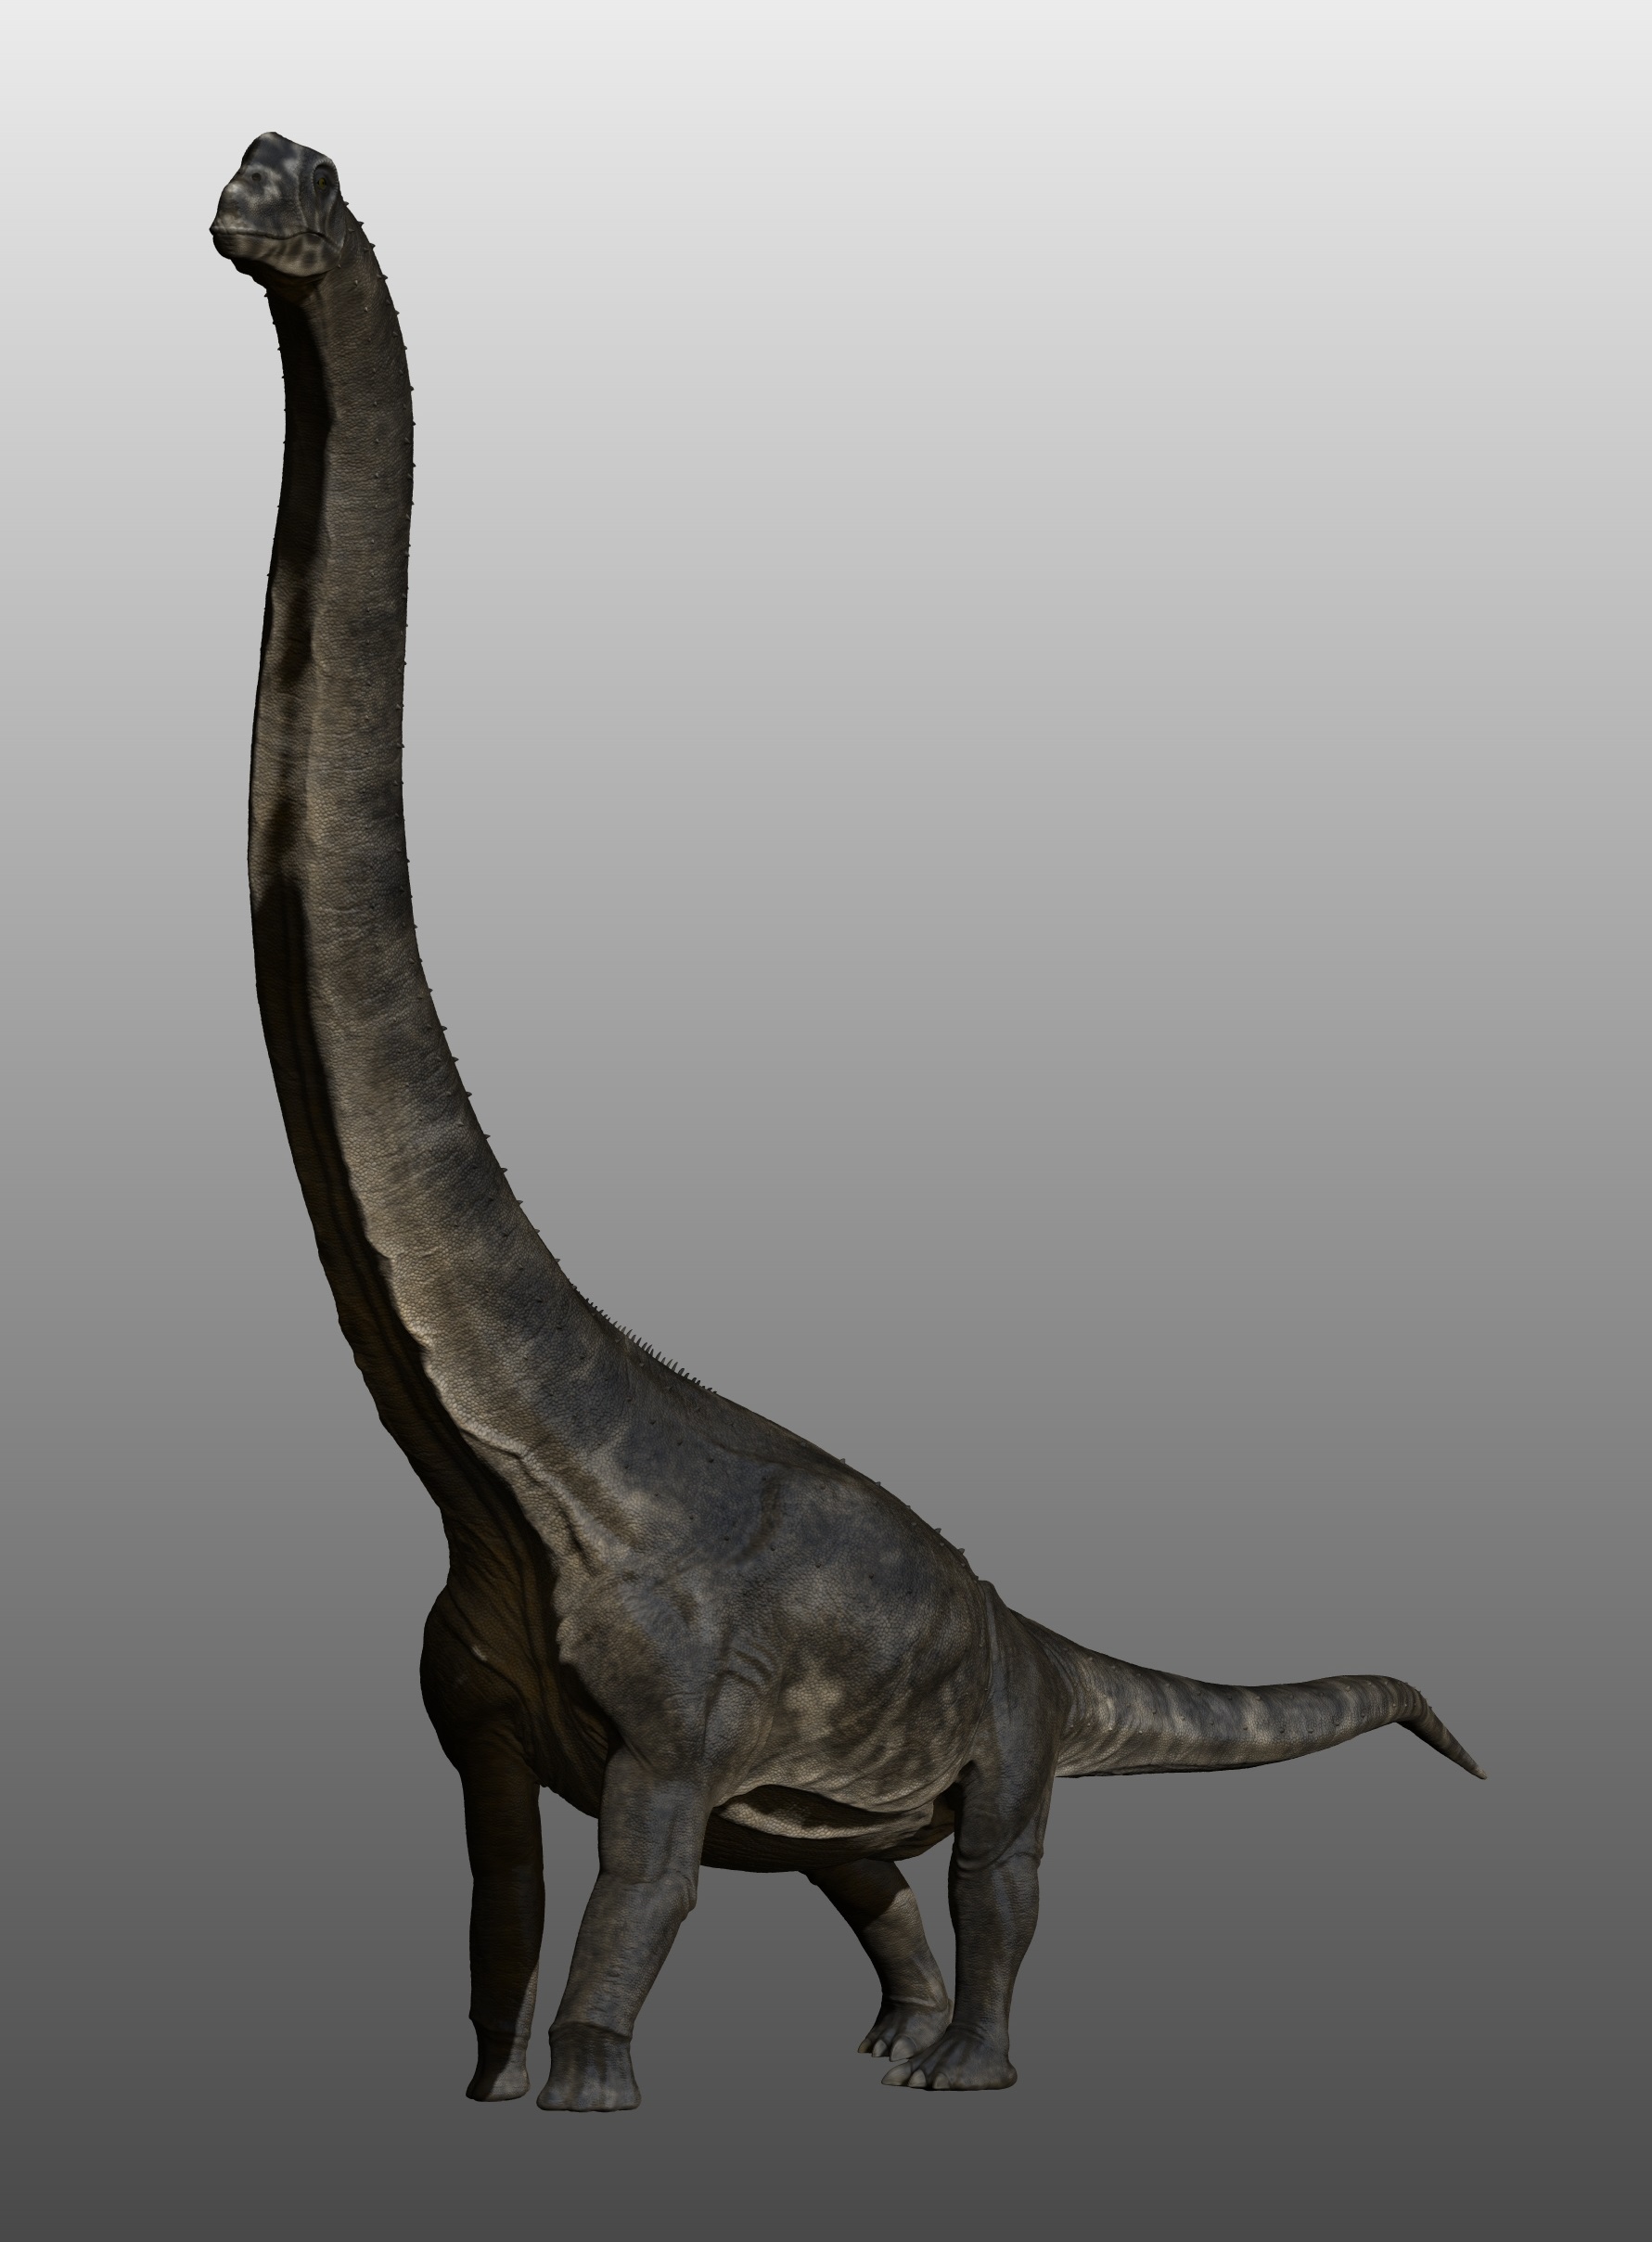 sauroposeidon_by_manuelsaurus-d8jb8qh.jpg